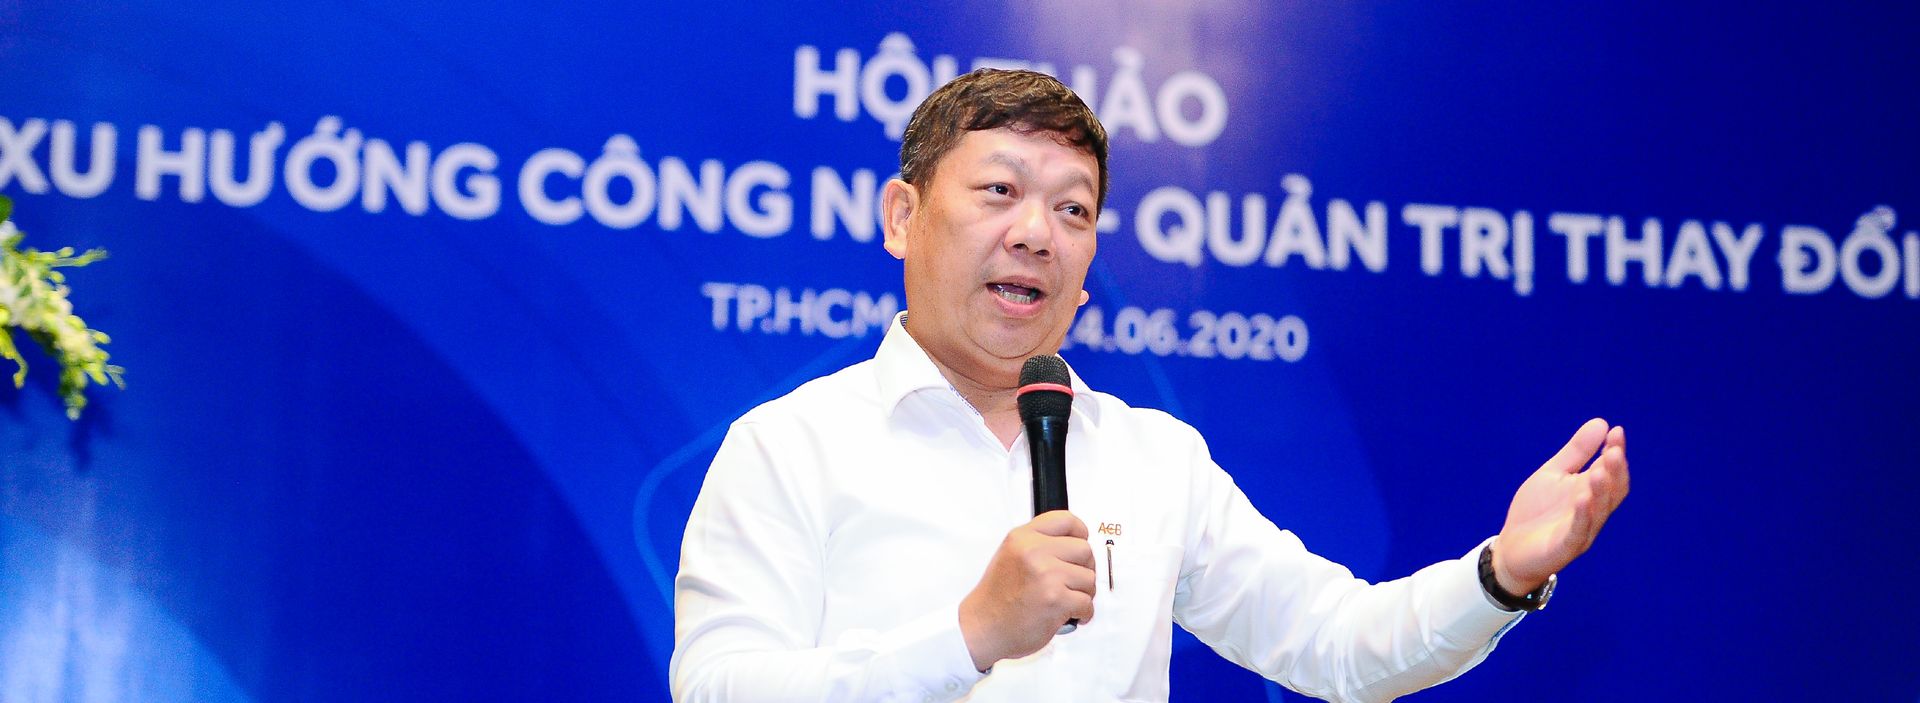 Ông Đỗ Minh Toàn - Tổng giám đốc ACB: Tăng tốc phát triển toàn diện ngân hàng giai đoạn 2019-2024